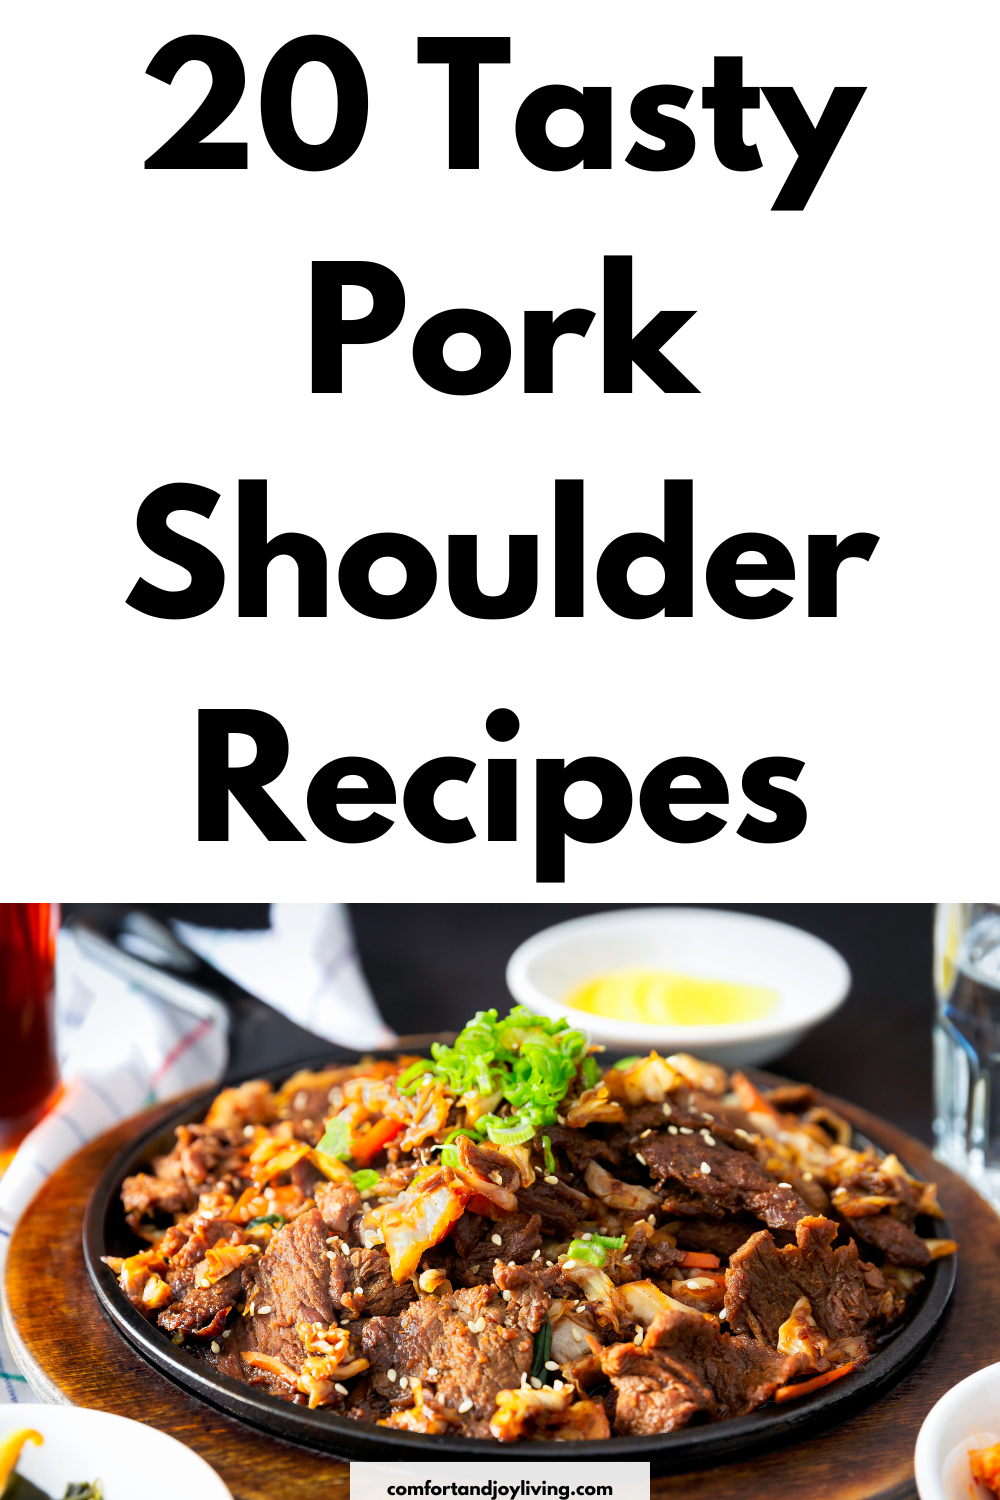 20 Tasty Pork Shoulder Recipes